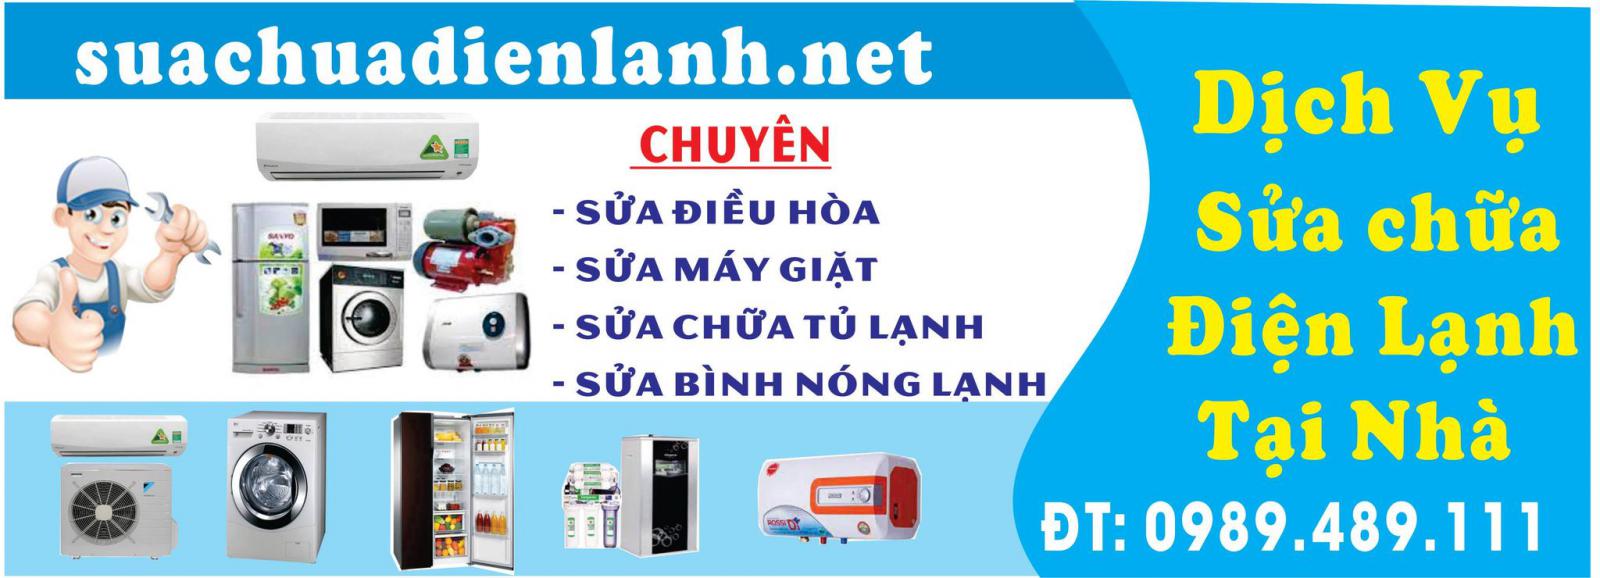 suachuadienlanh.net cung cấp dịch vụ sửa chữa bình nóng lạnh tại Hoài Đức